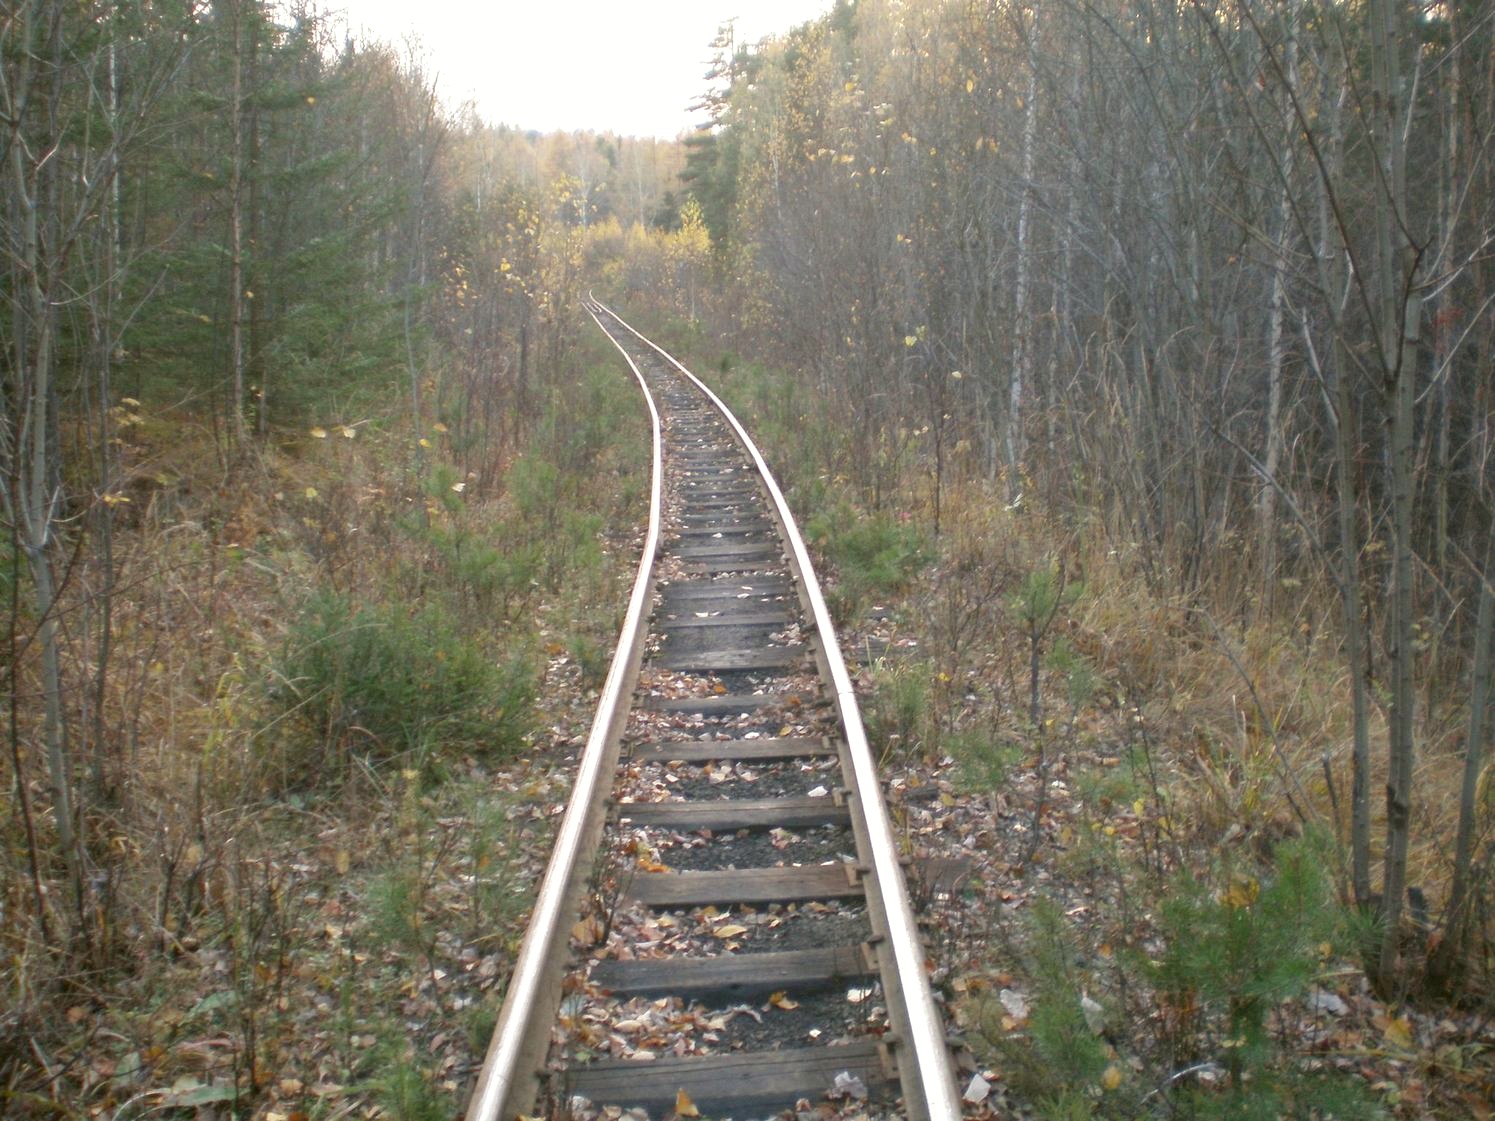 Висимо-Уткинская узкоколейная железная дорога  — фотографии, сделанные в 2007 году (часть 14)